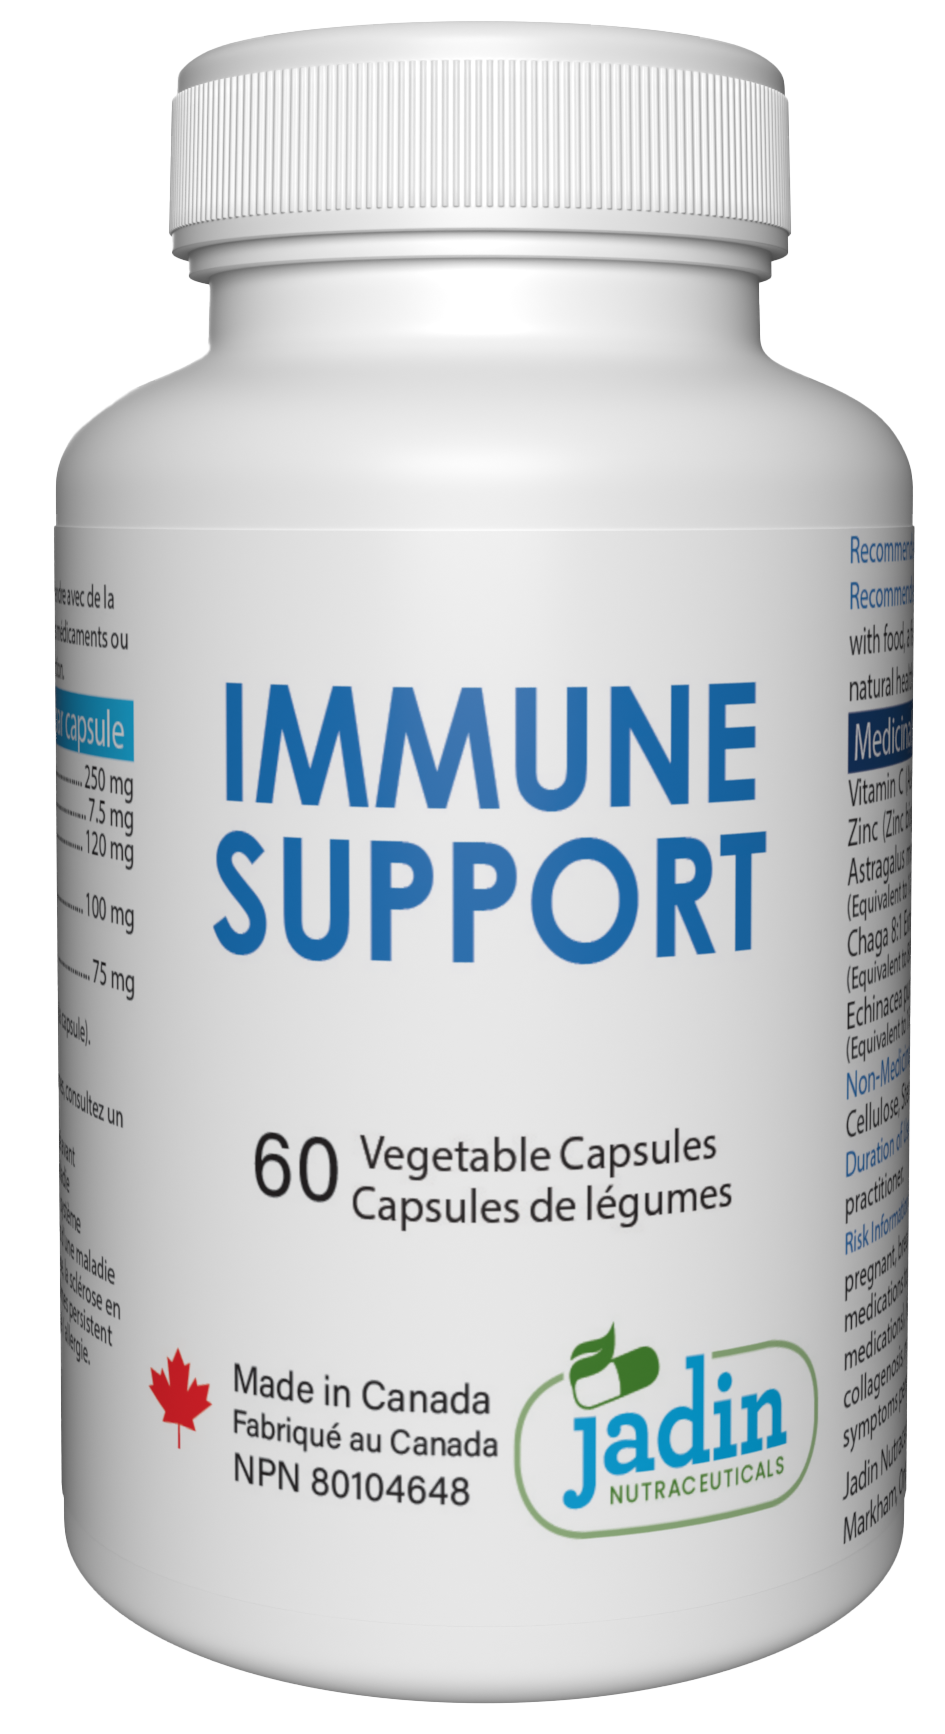 Immune system support capsules